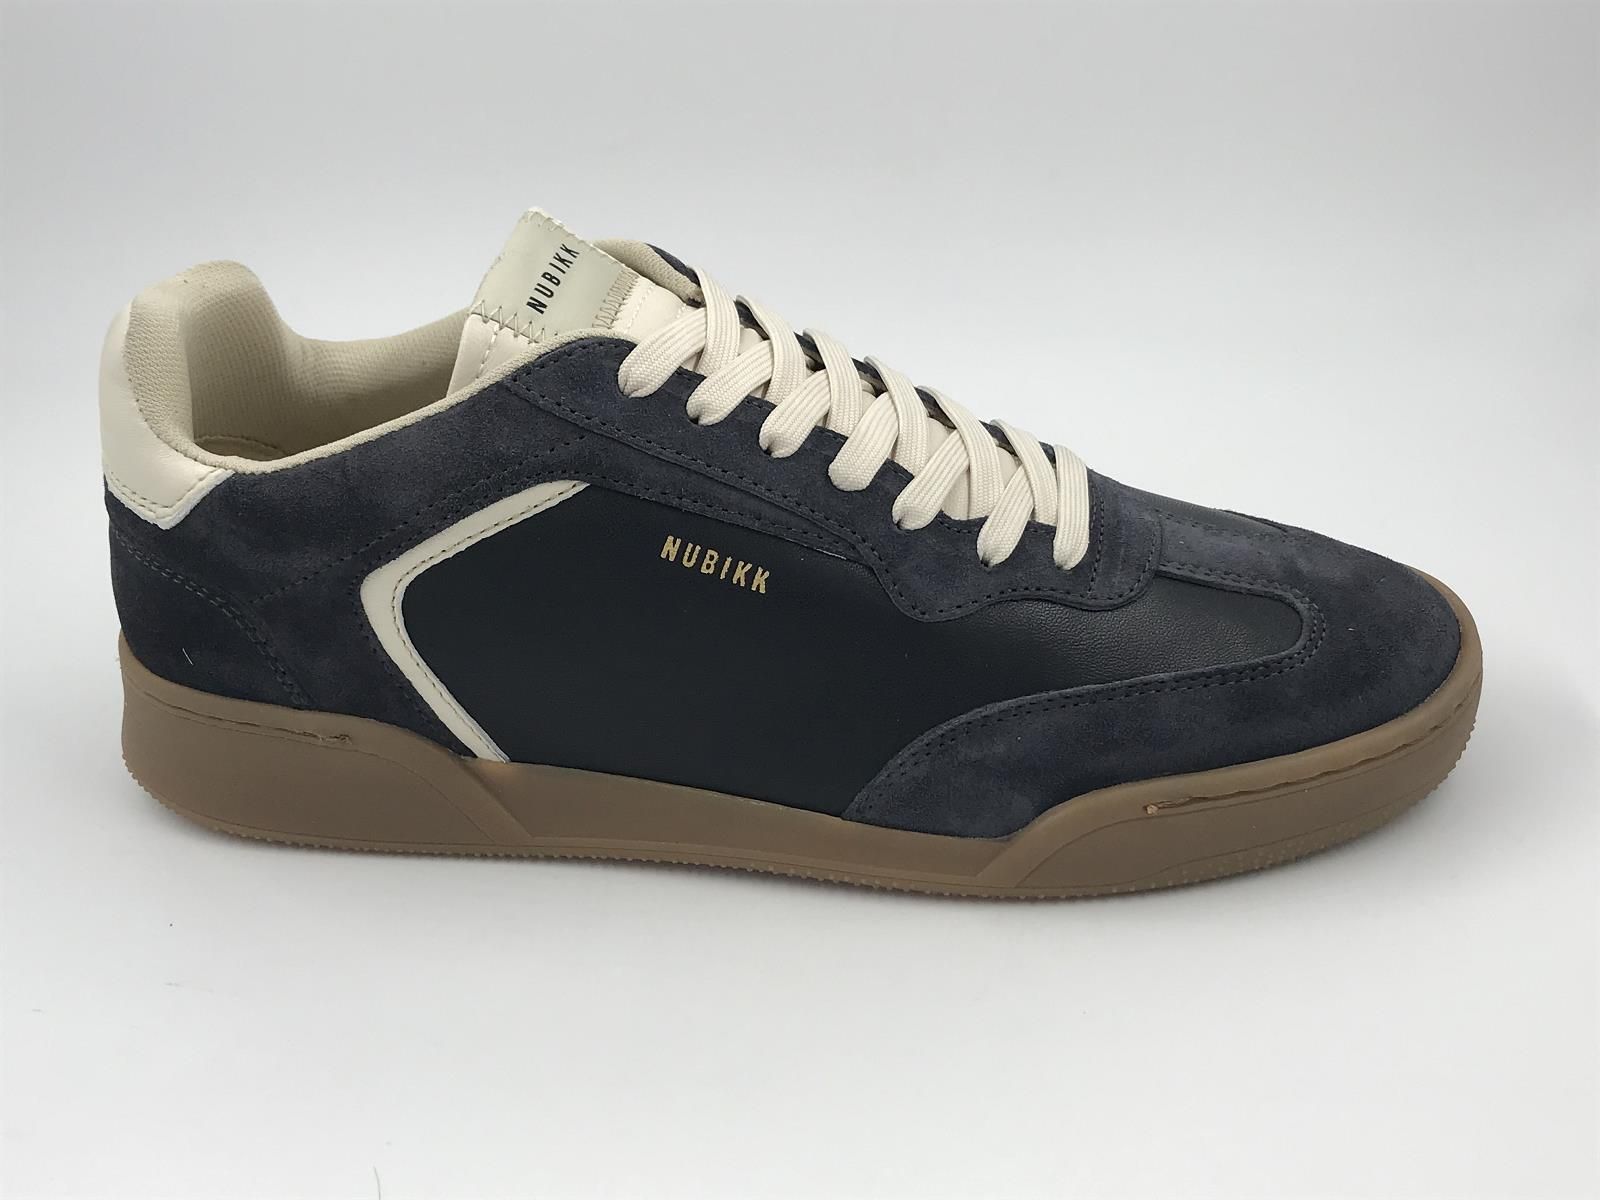 nubikk her sneaker led blauw (21077500 blueberry wing48LM navy) - Stiletto Schoenen (Oudenaarde)